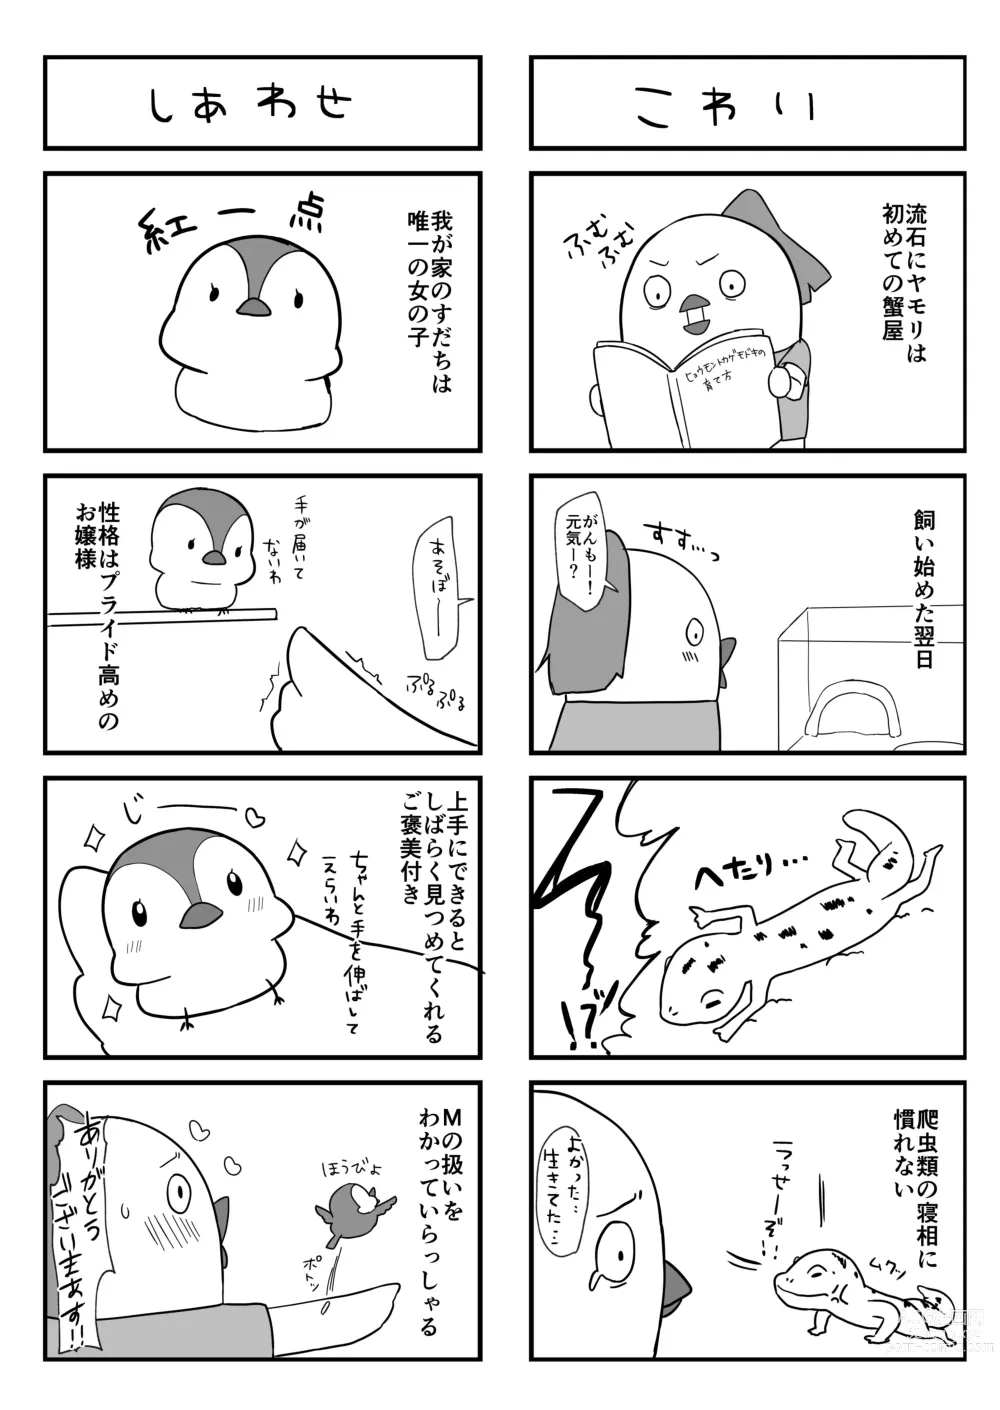 Page 18 of doujinshi Shota ga Tame ni Bel wa Naru 2